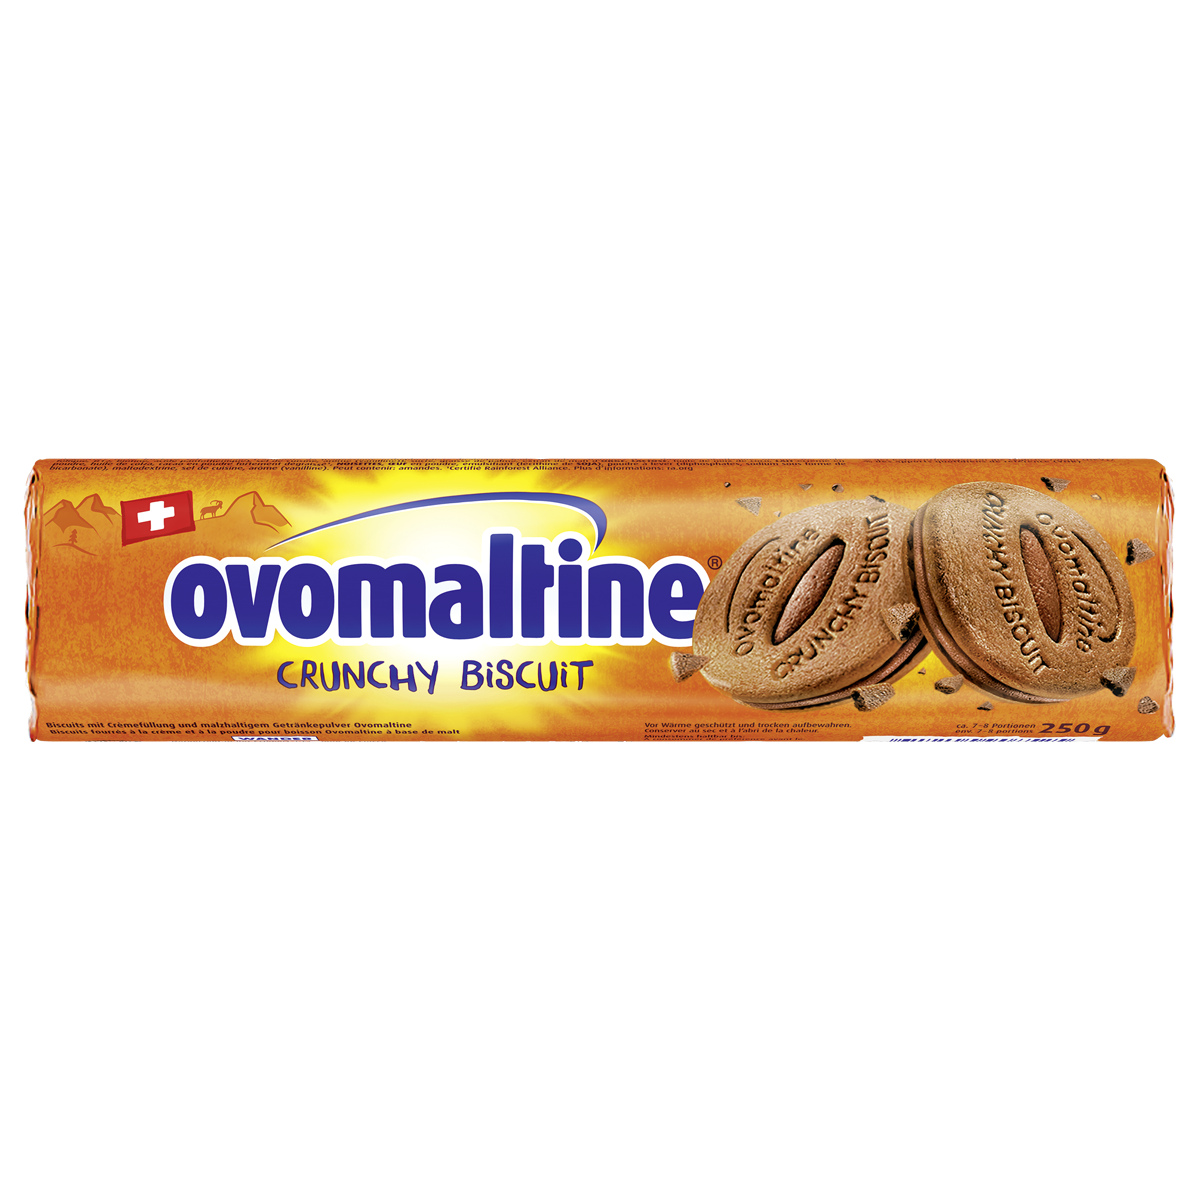 Ovaltine Crunchy Biscuit, 250g